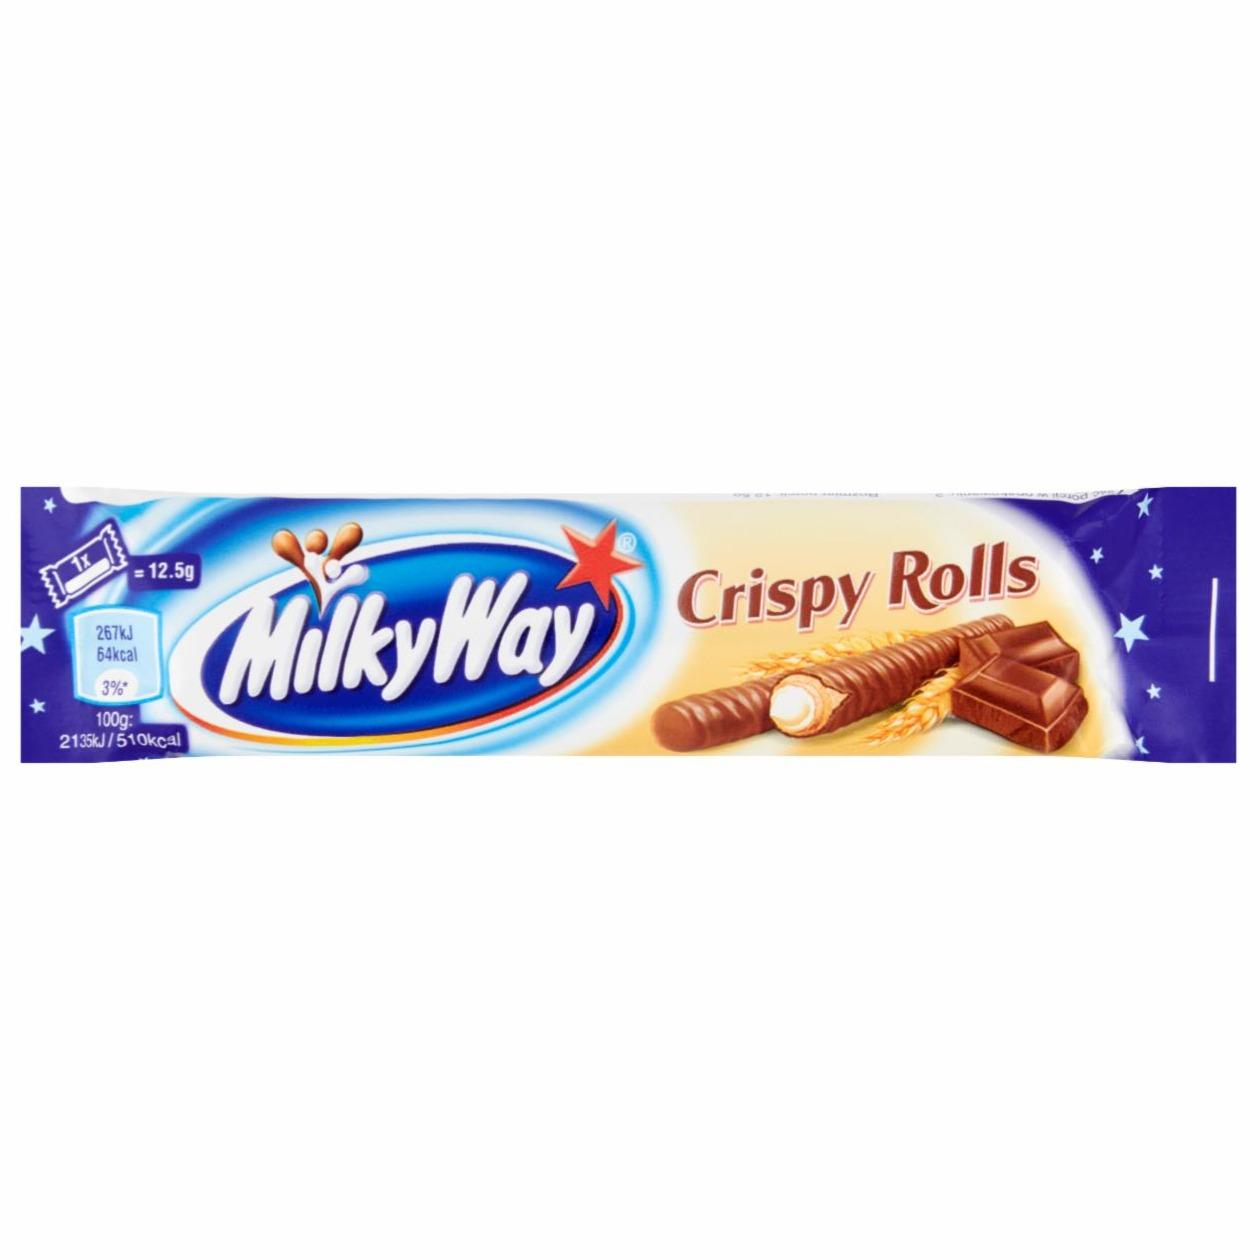 Képek - Milky Way Crispy Rolls tejcsokoládé 25 g